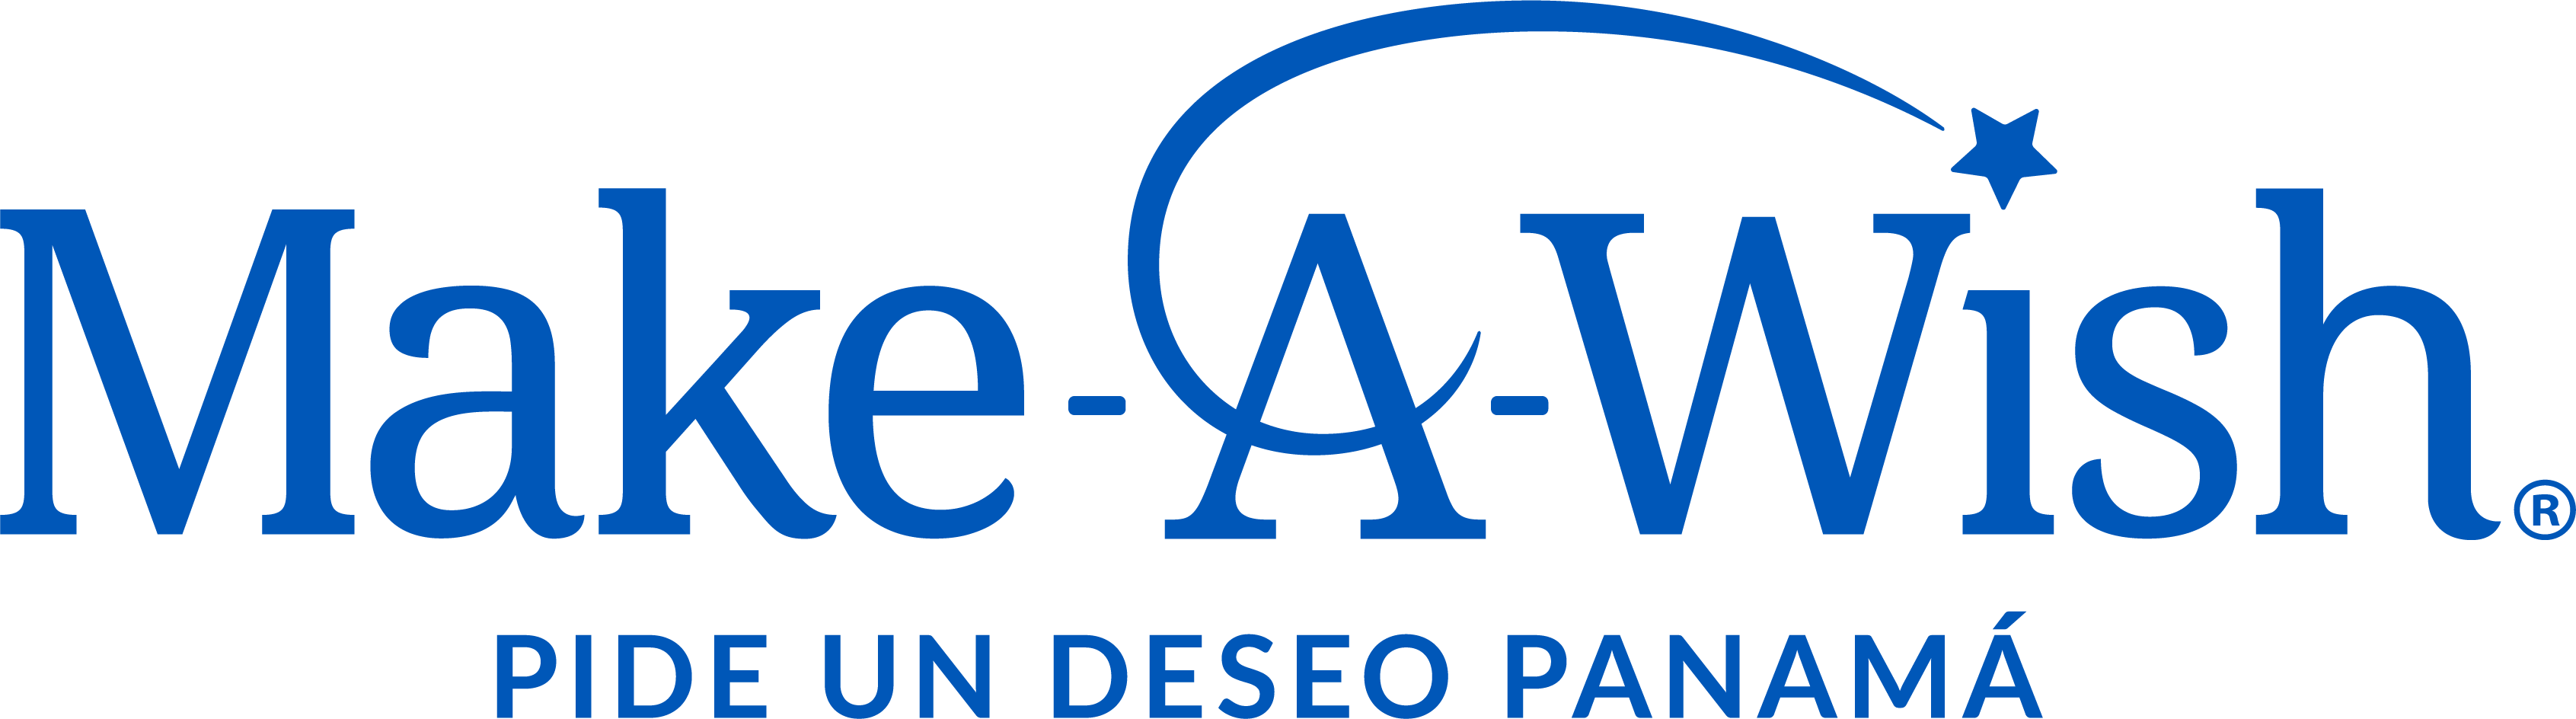 Make-A-Wish Panama logo